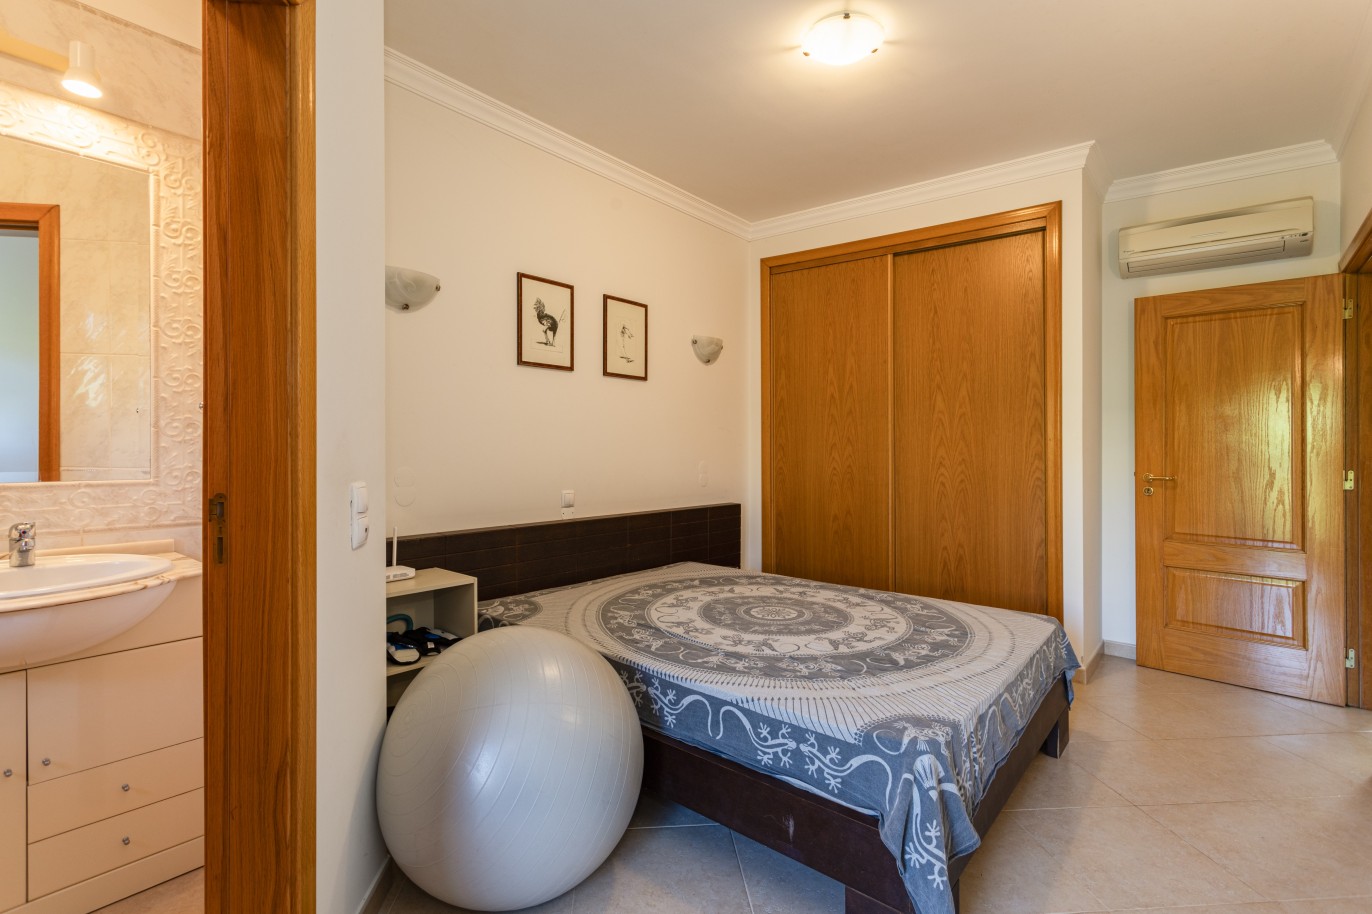 Villa mit 3 Schlafzimmern, in privater Wohnanlage, zu verkaufen in Lagos, Algarve_246275